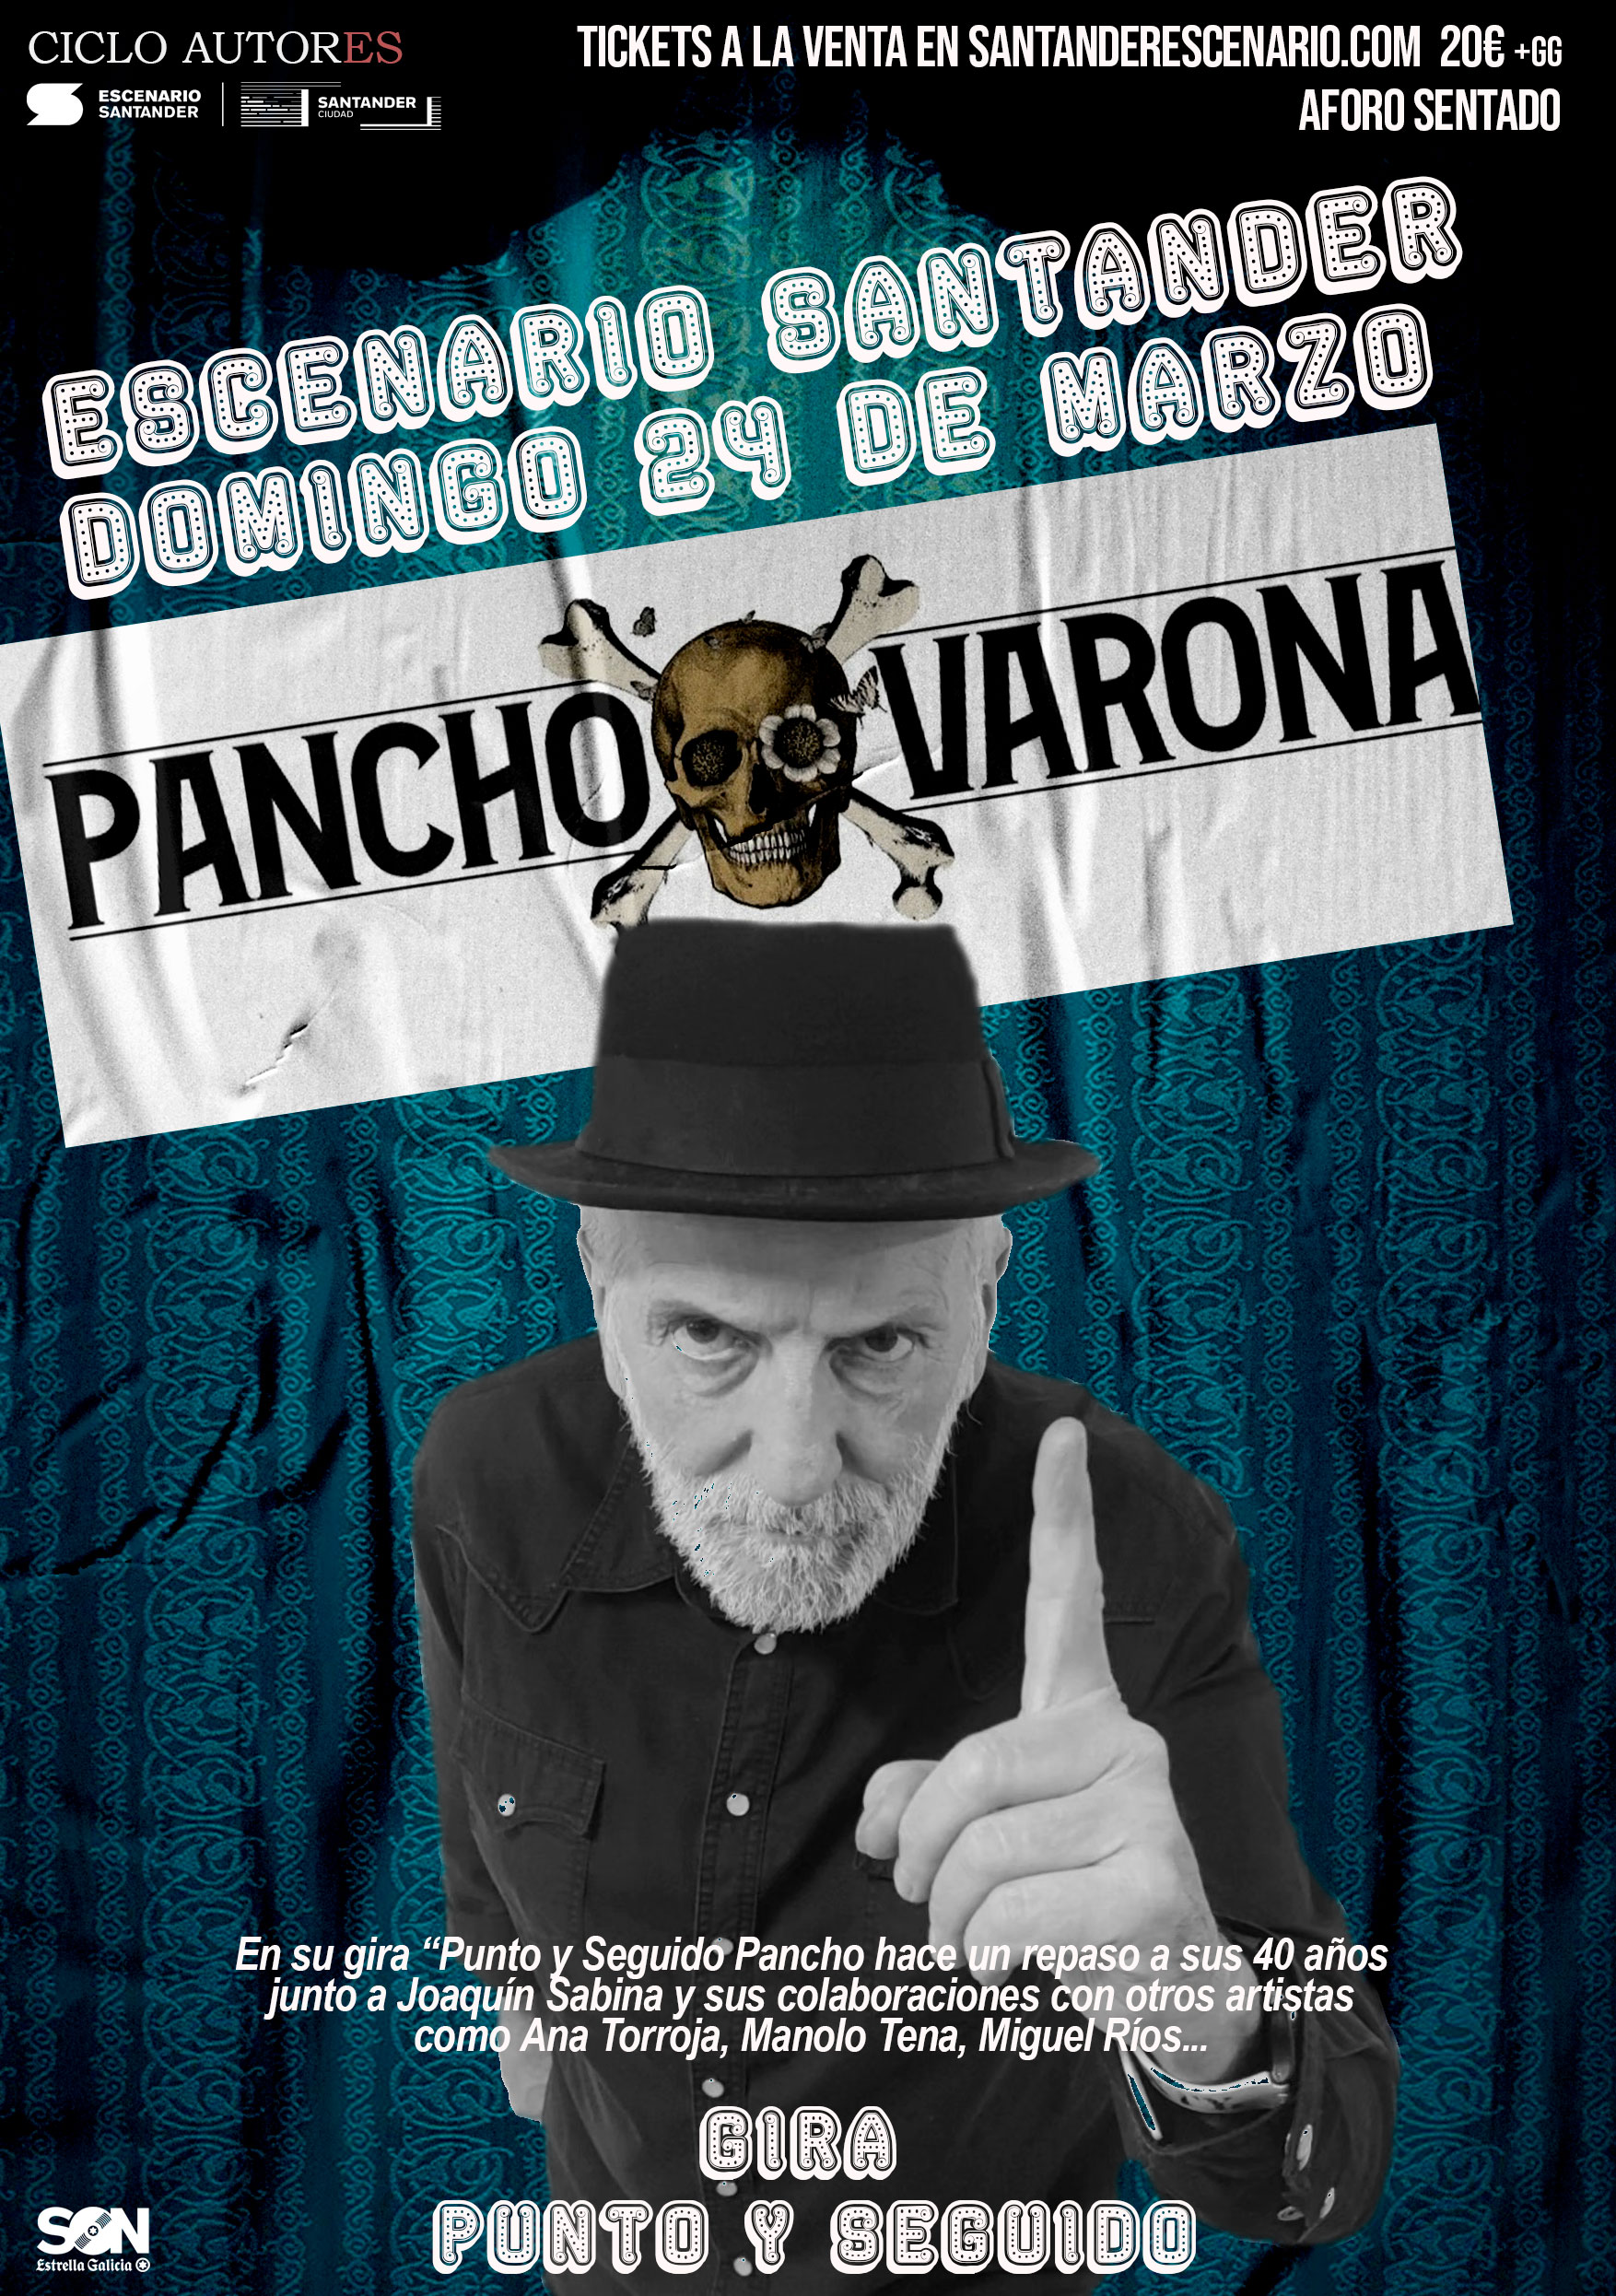 PANCHO VARONA en Escenario Santander - Cantabria - Mutick